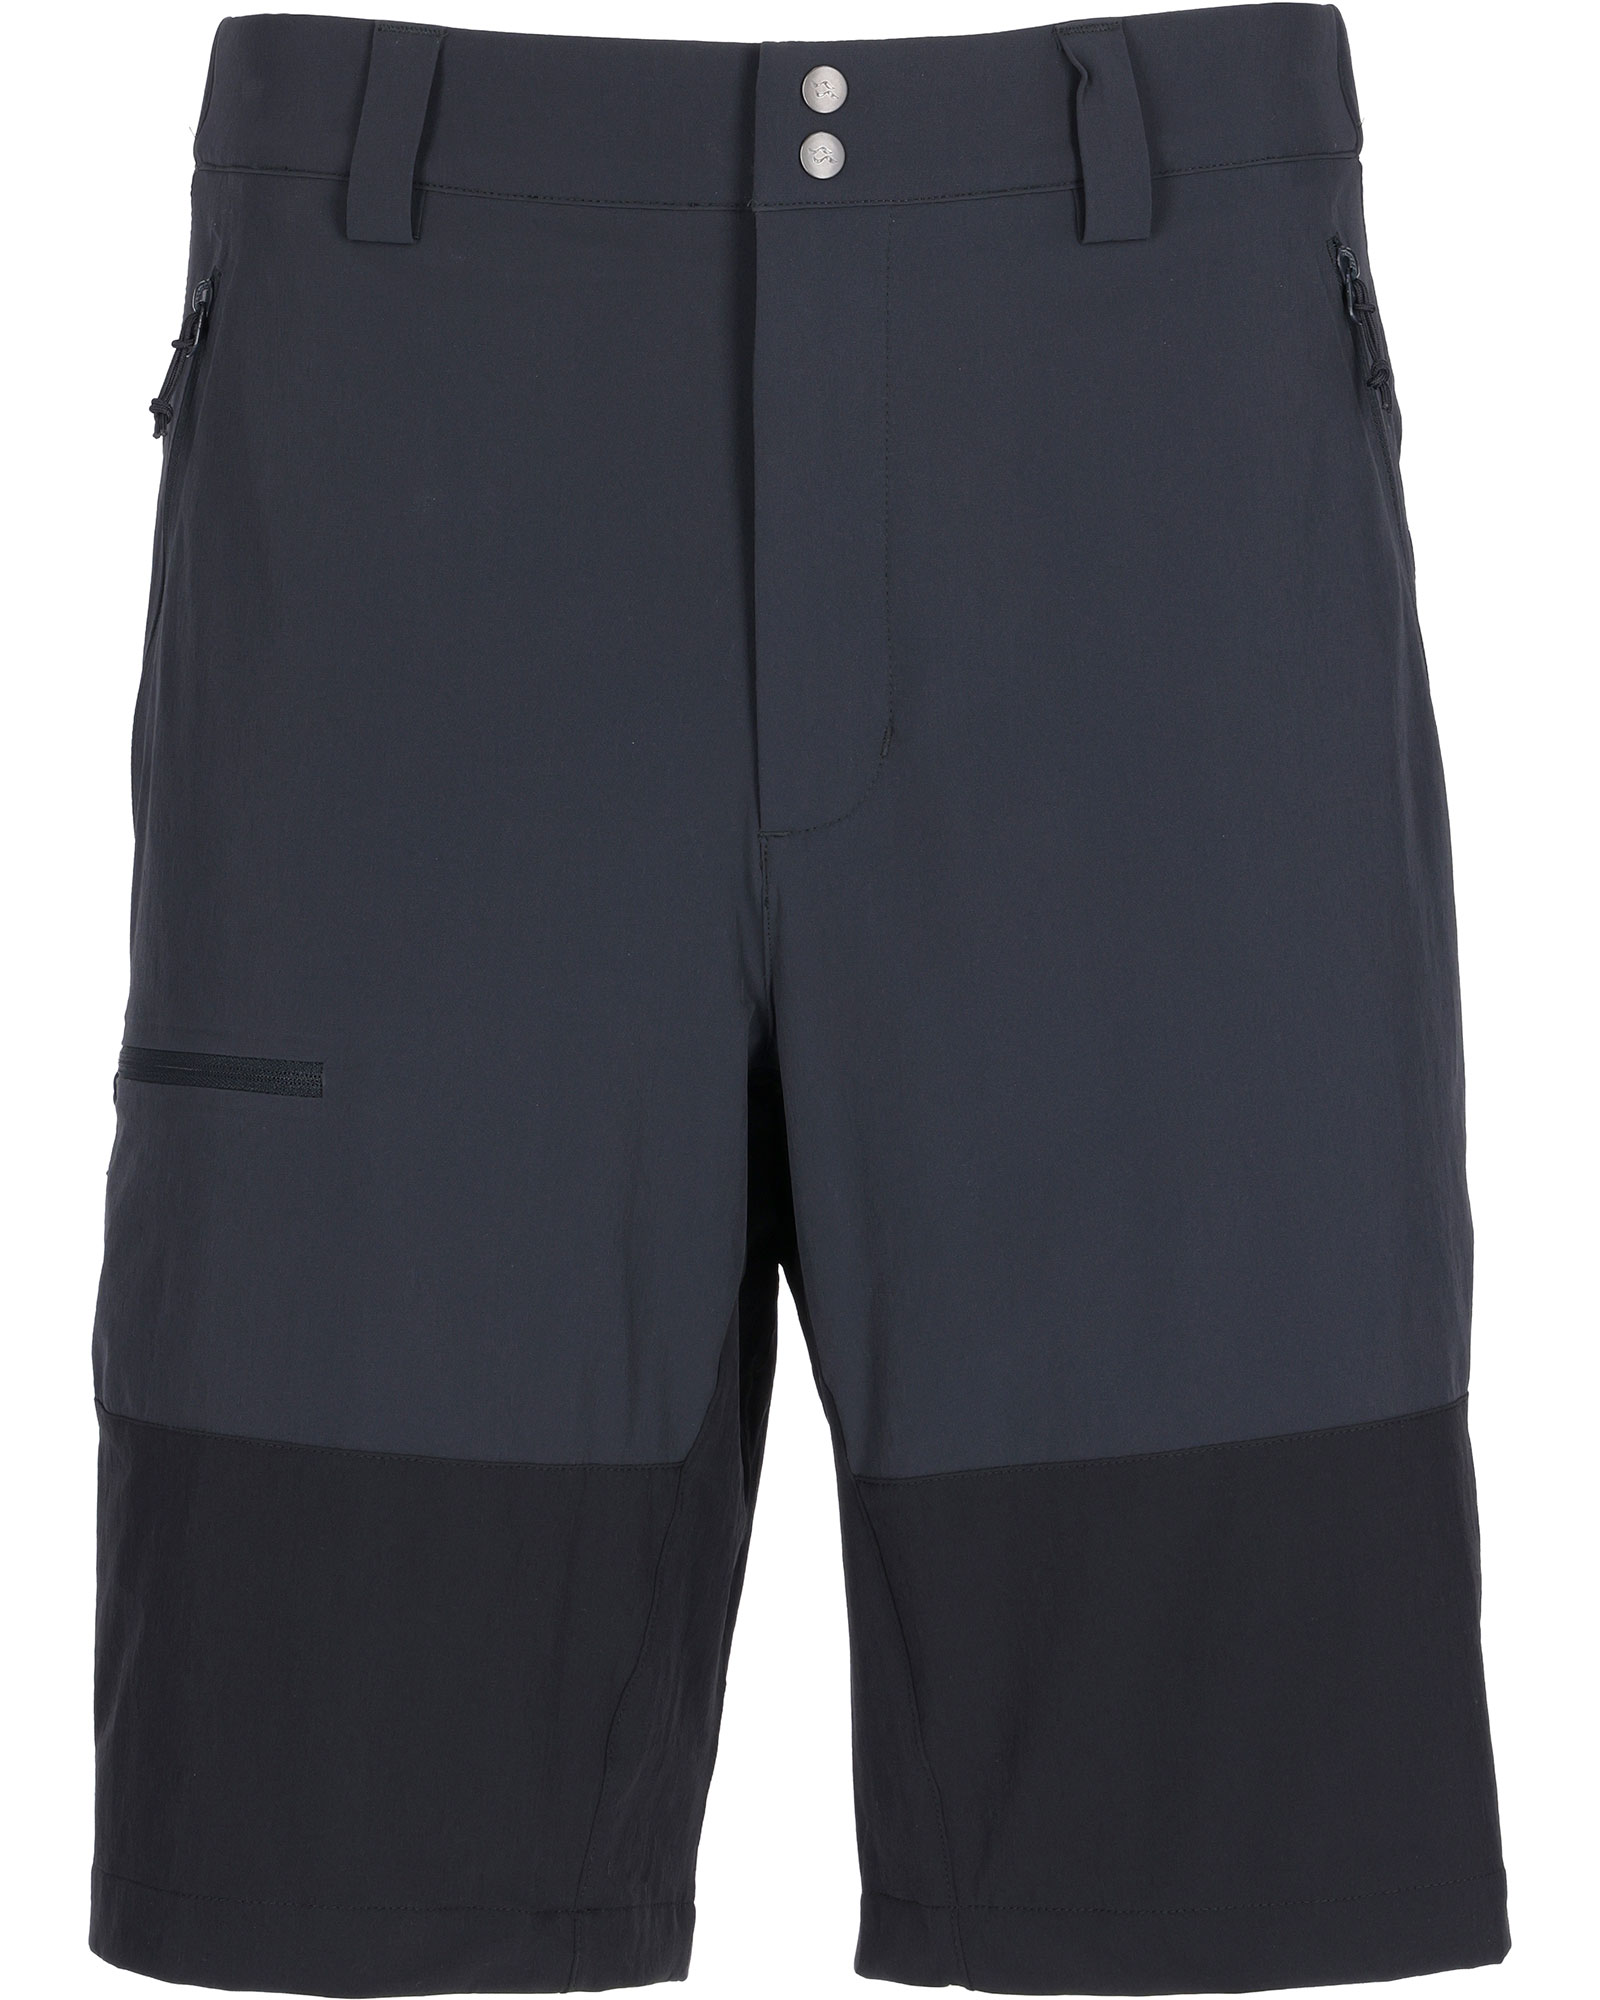 Rab Torque Mountain Men’s Shorts - Beluga 36"